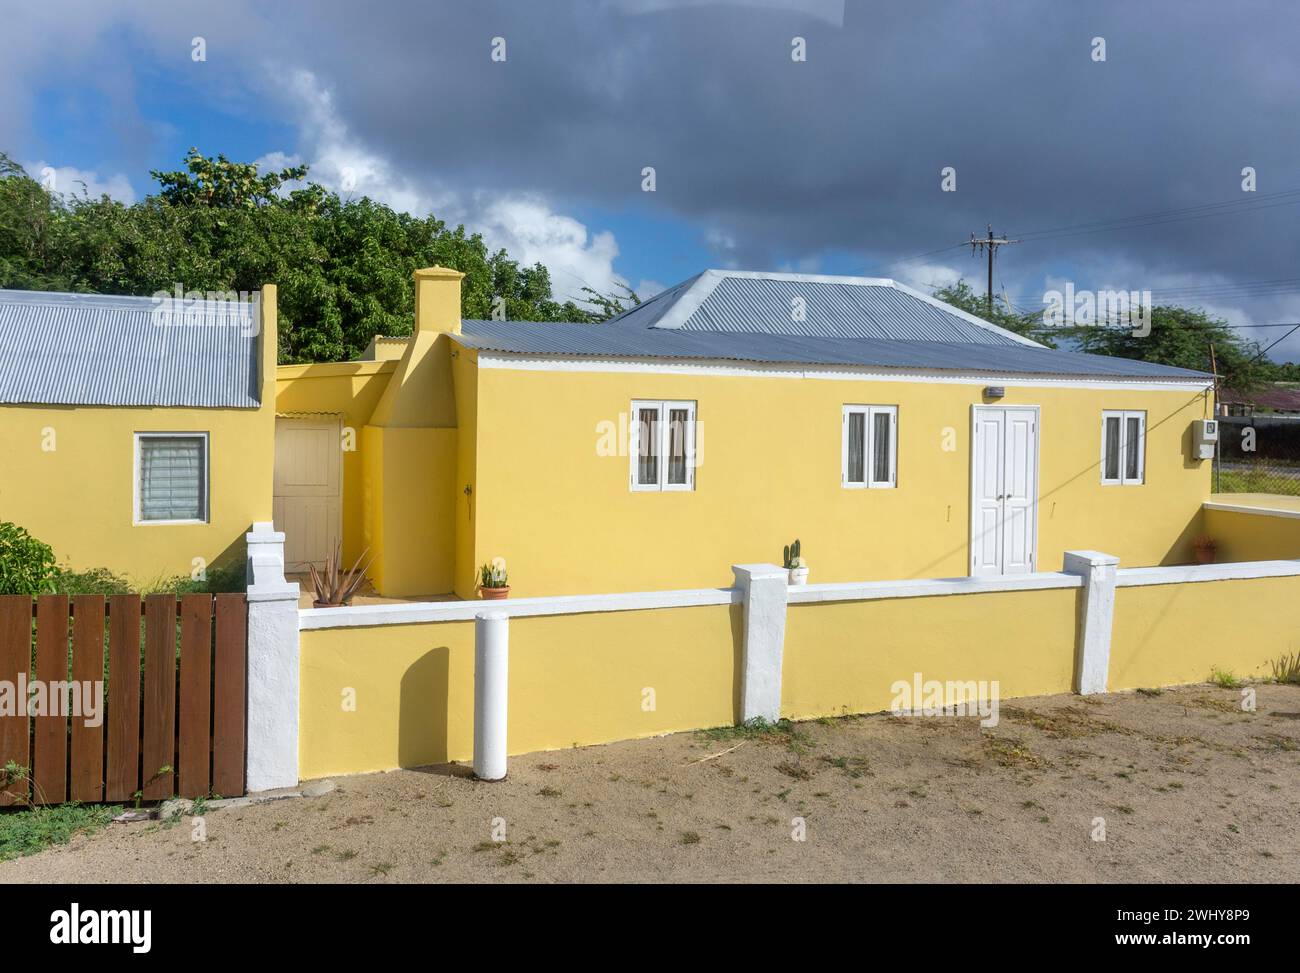 Maison typique, Santa Cruz, Aruba, Iles ABC, Antilles sous le vent, Caraïbes Banque D'Images